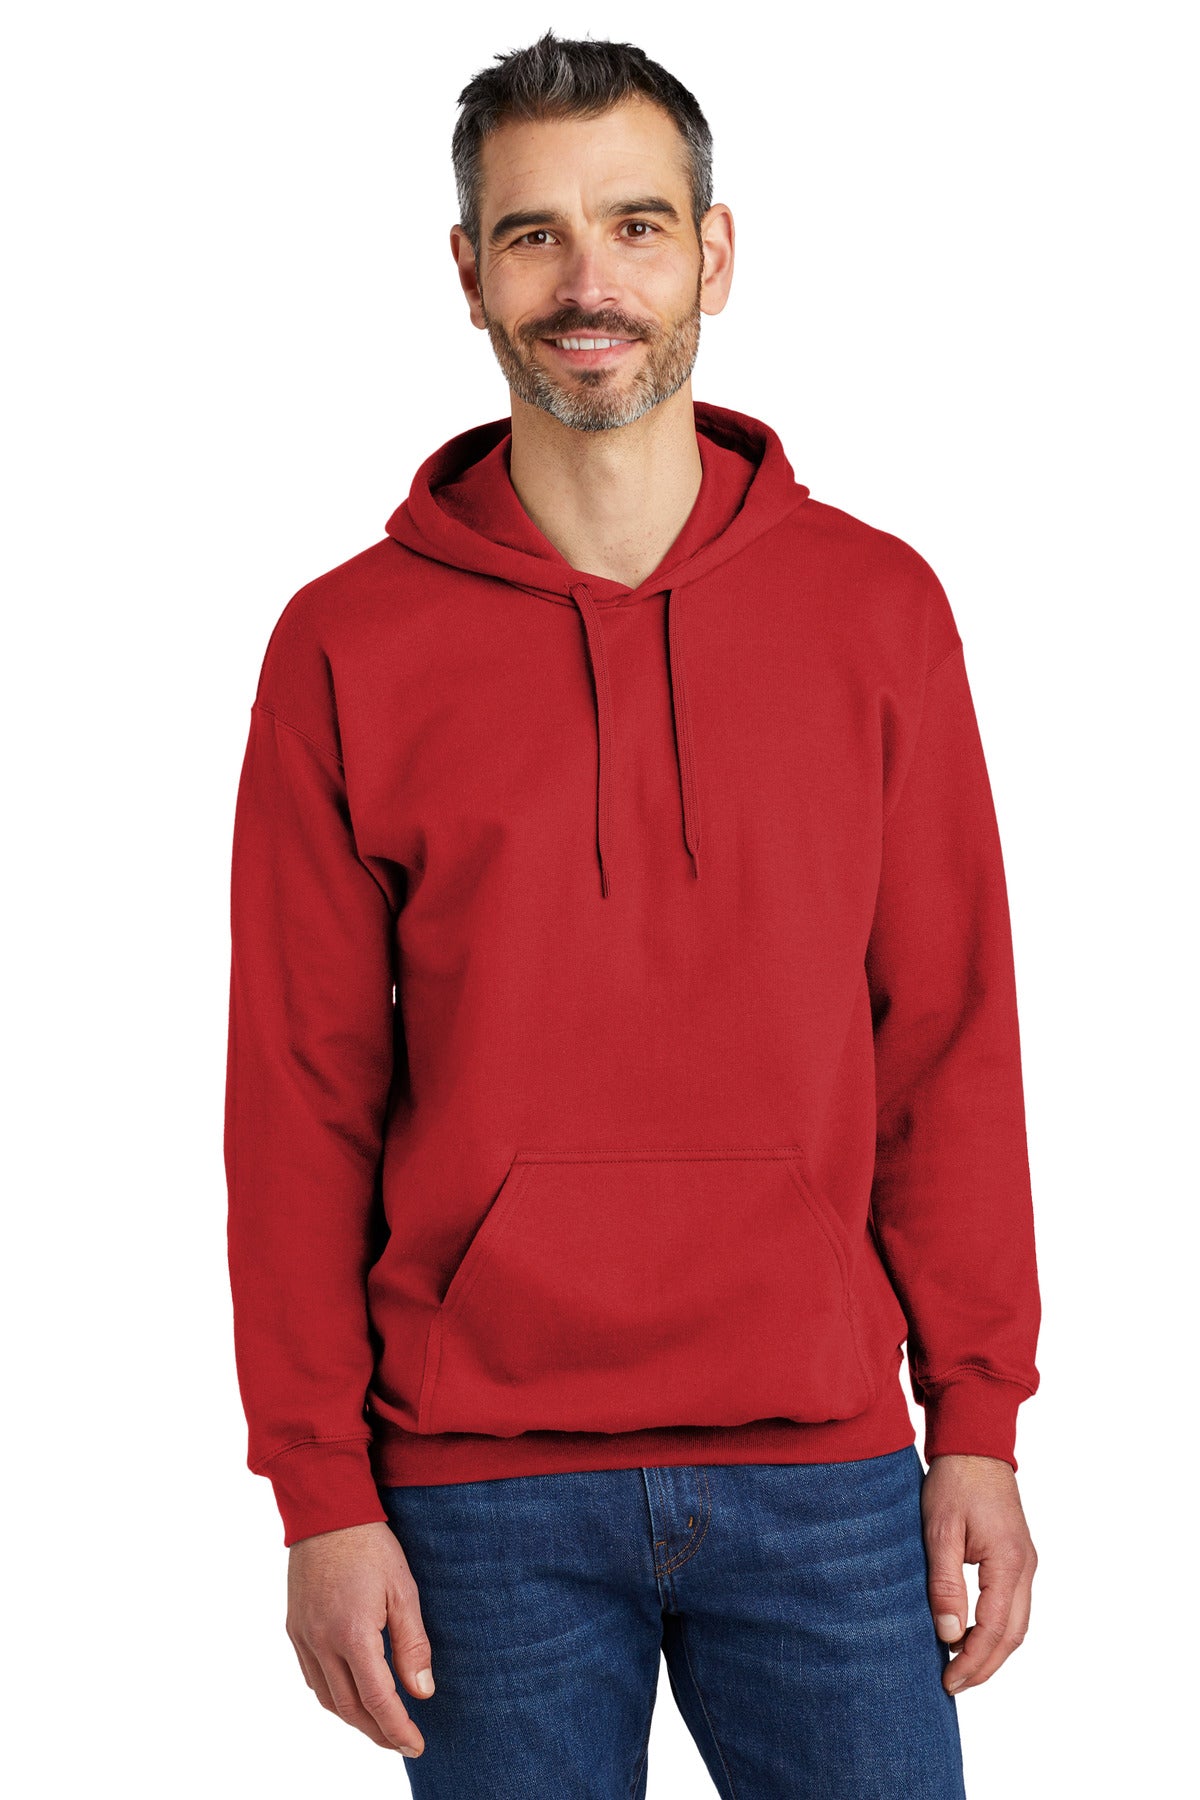 Sweatshirts/Fleece Red Gildan